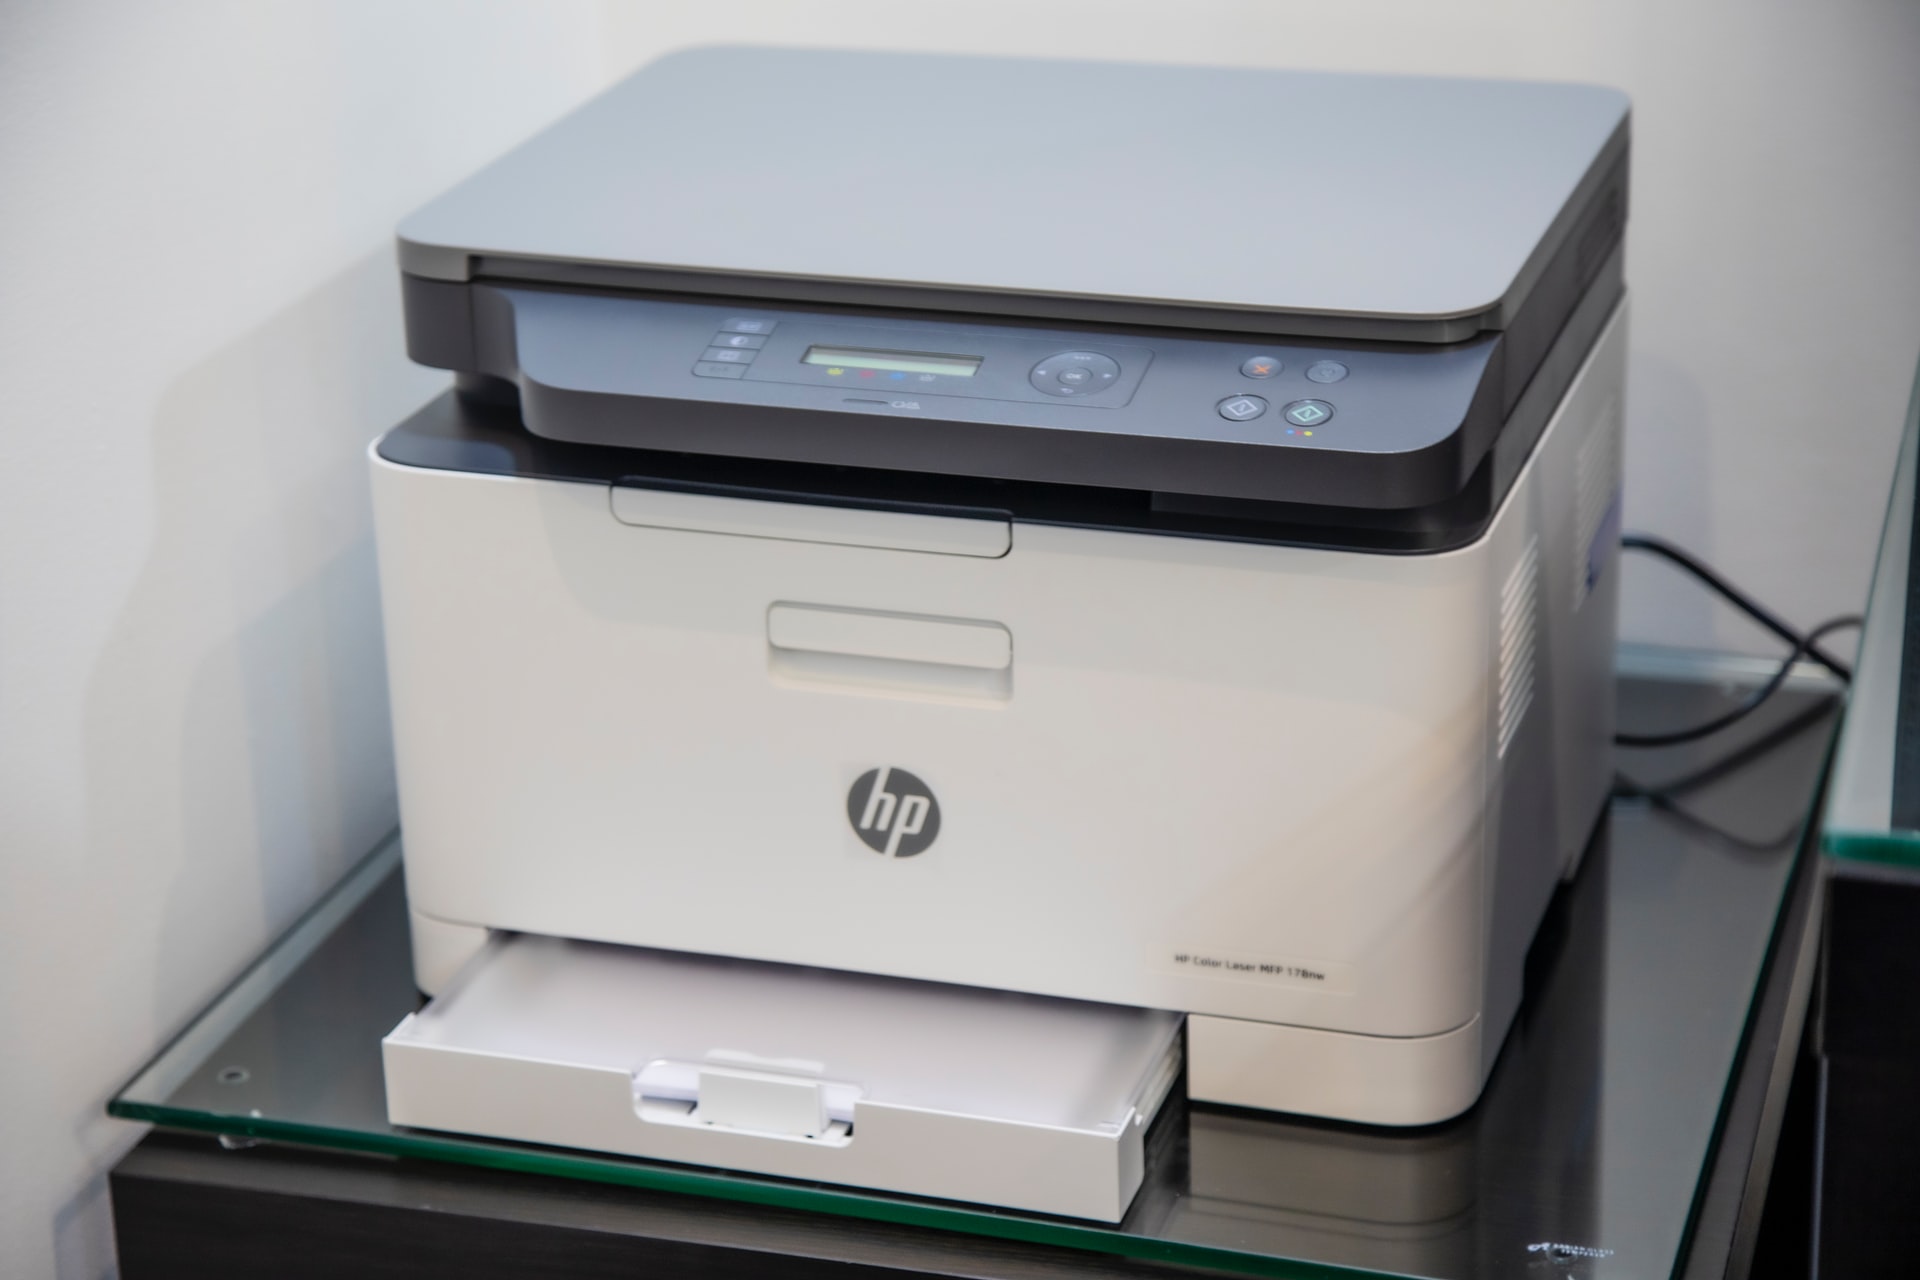 HP Printer security